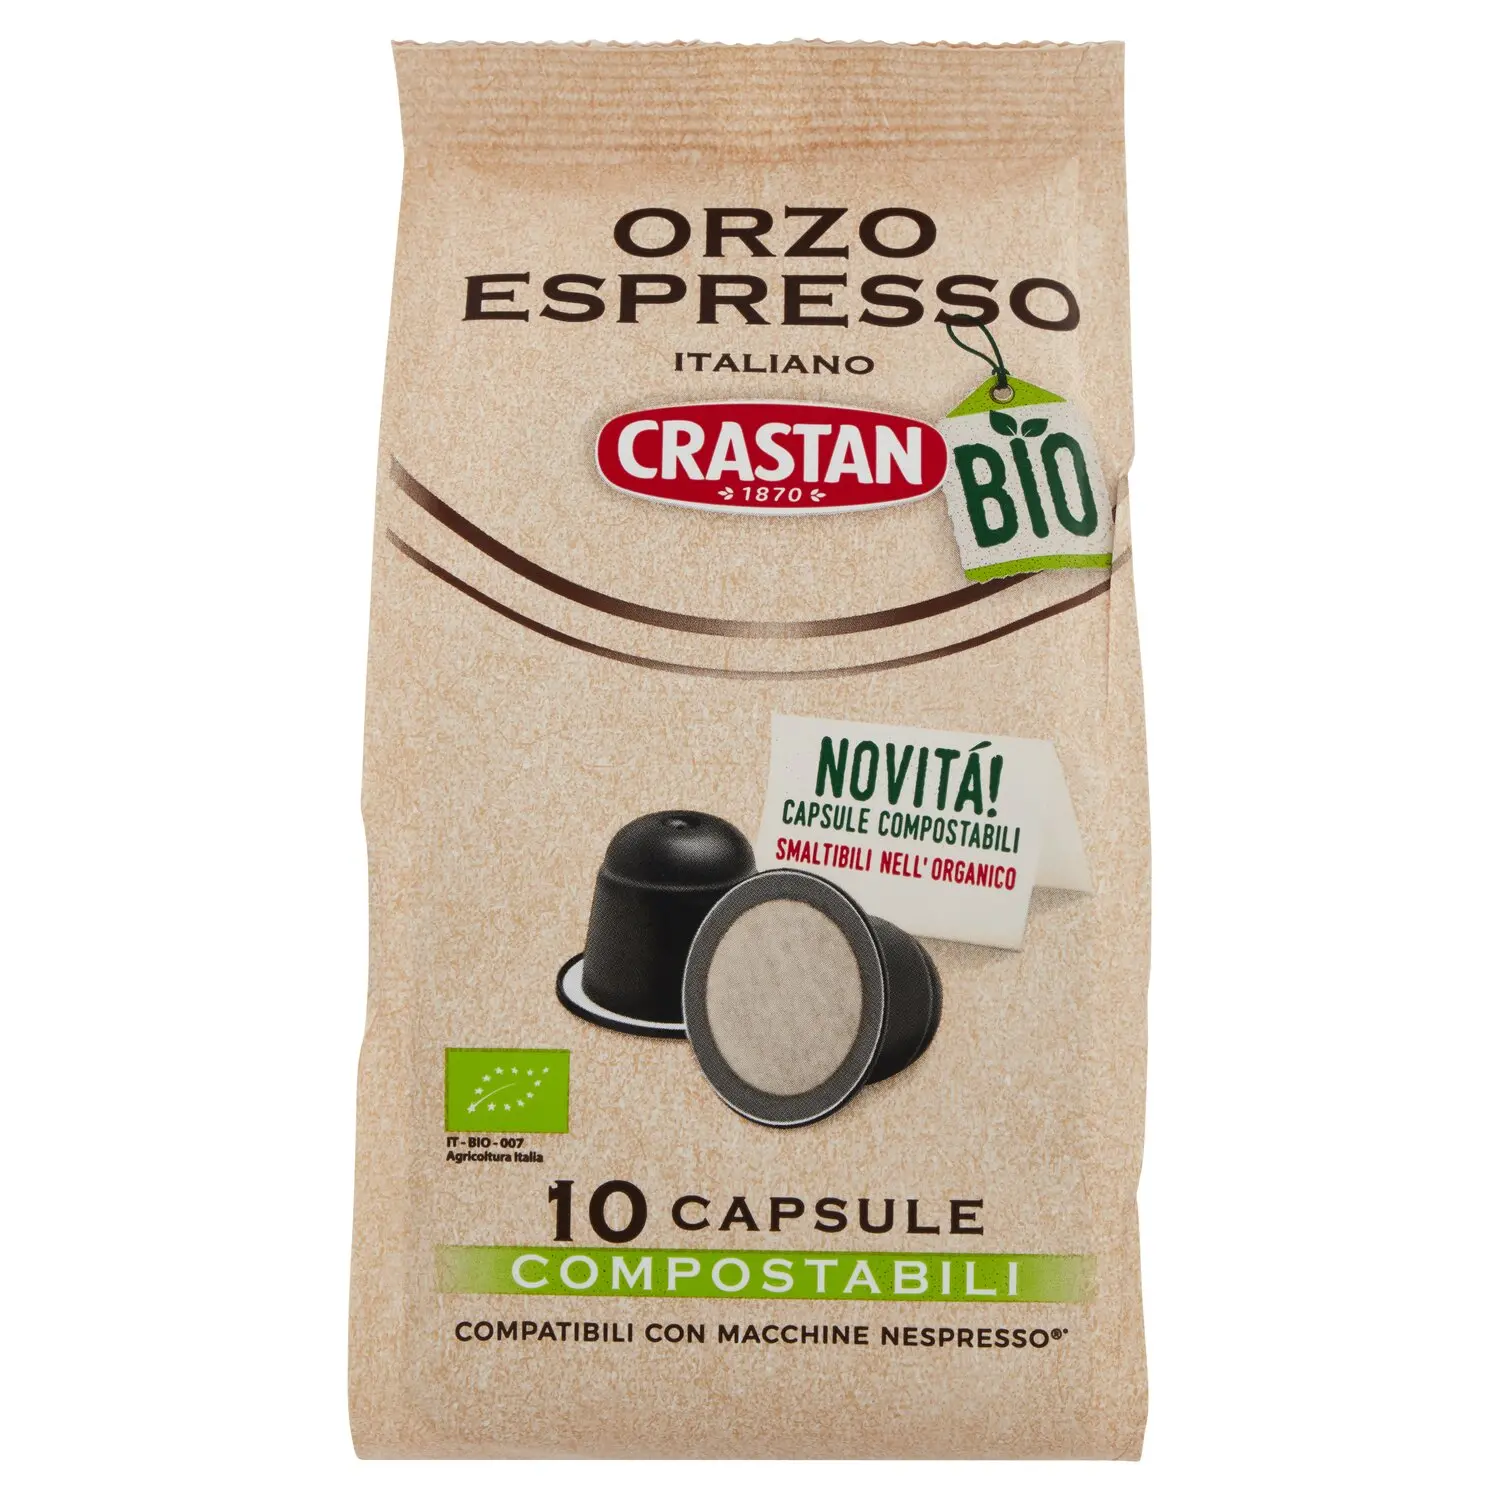 Crastan Bio Orzo Espresso Italiano 10 Capsule Compostabili Compatibili  Macchine Nespresso* 10 x 2,5g